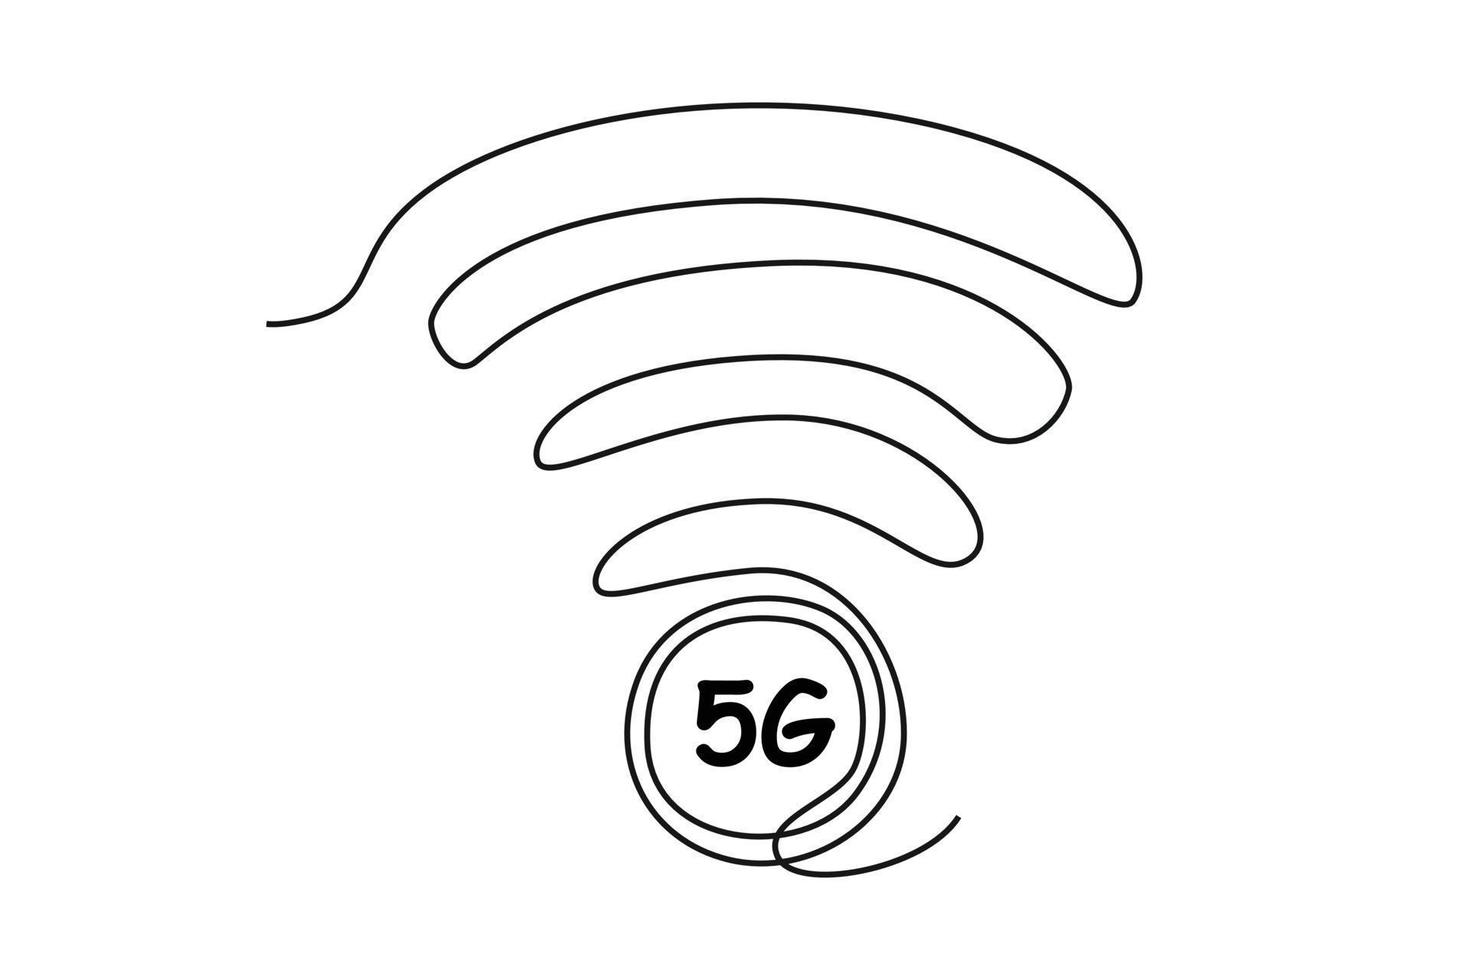 kontinuierlich einer Linie Zeichnung 5g Netzwerk. schnelle Geschwindigkeit Handy, Mobiltelefon Internet. 5g Technologie Konzept. Single Linie zeichnen Design Vektor Grafik Illustration.